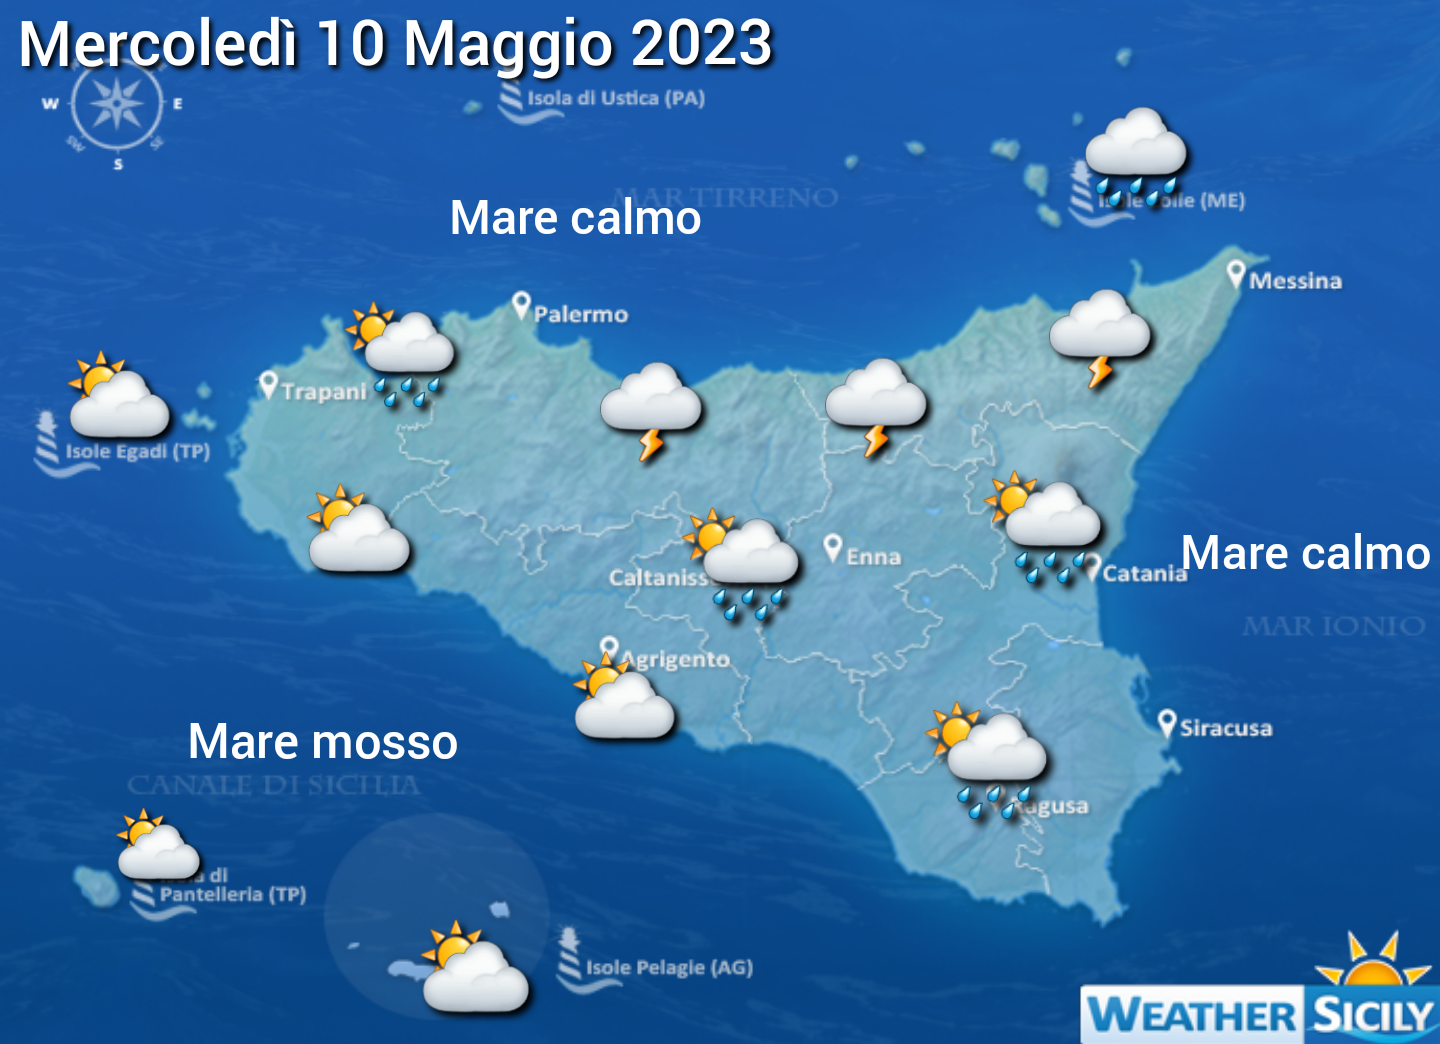 Meteo Sicilia: ancora deboli piogge nelle prossime ore. Maltempo più intenso domani con anche temporali sul messinese!